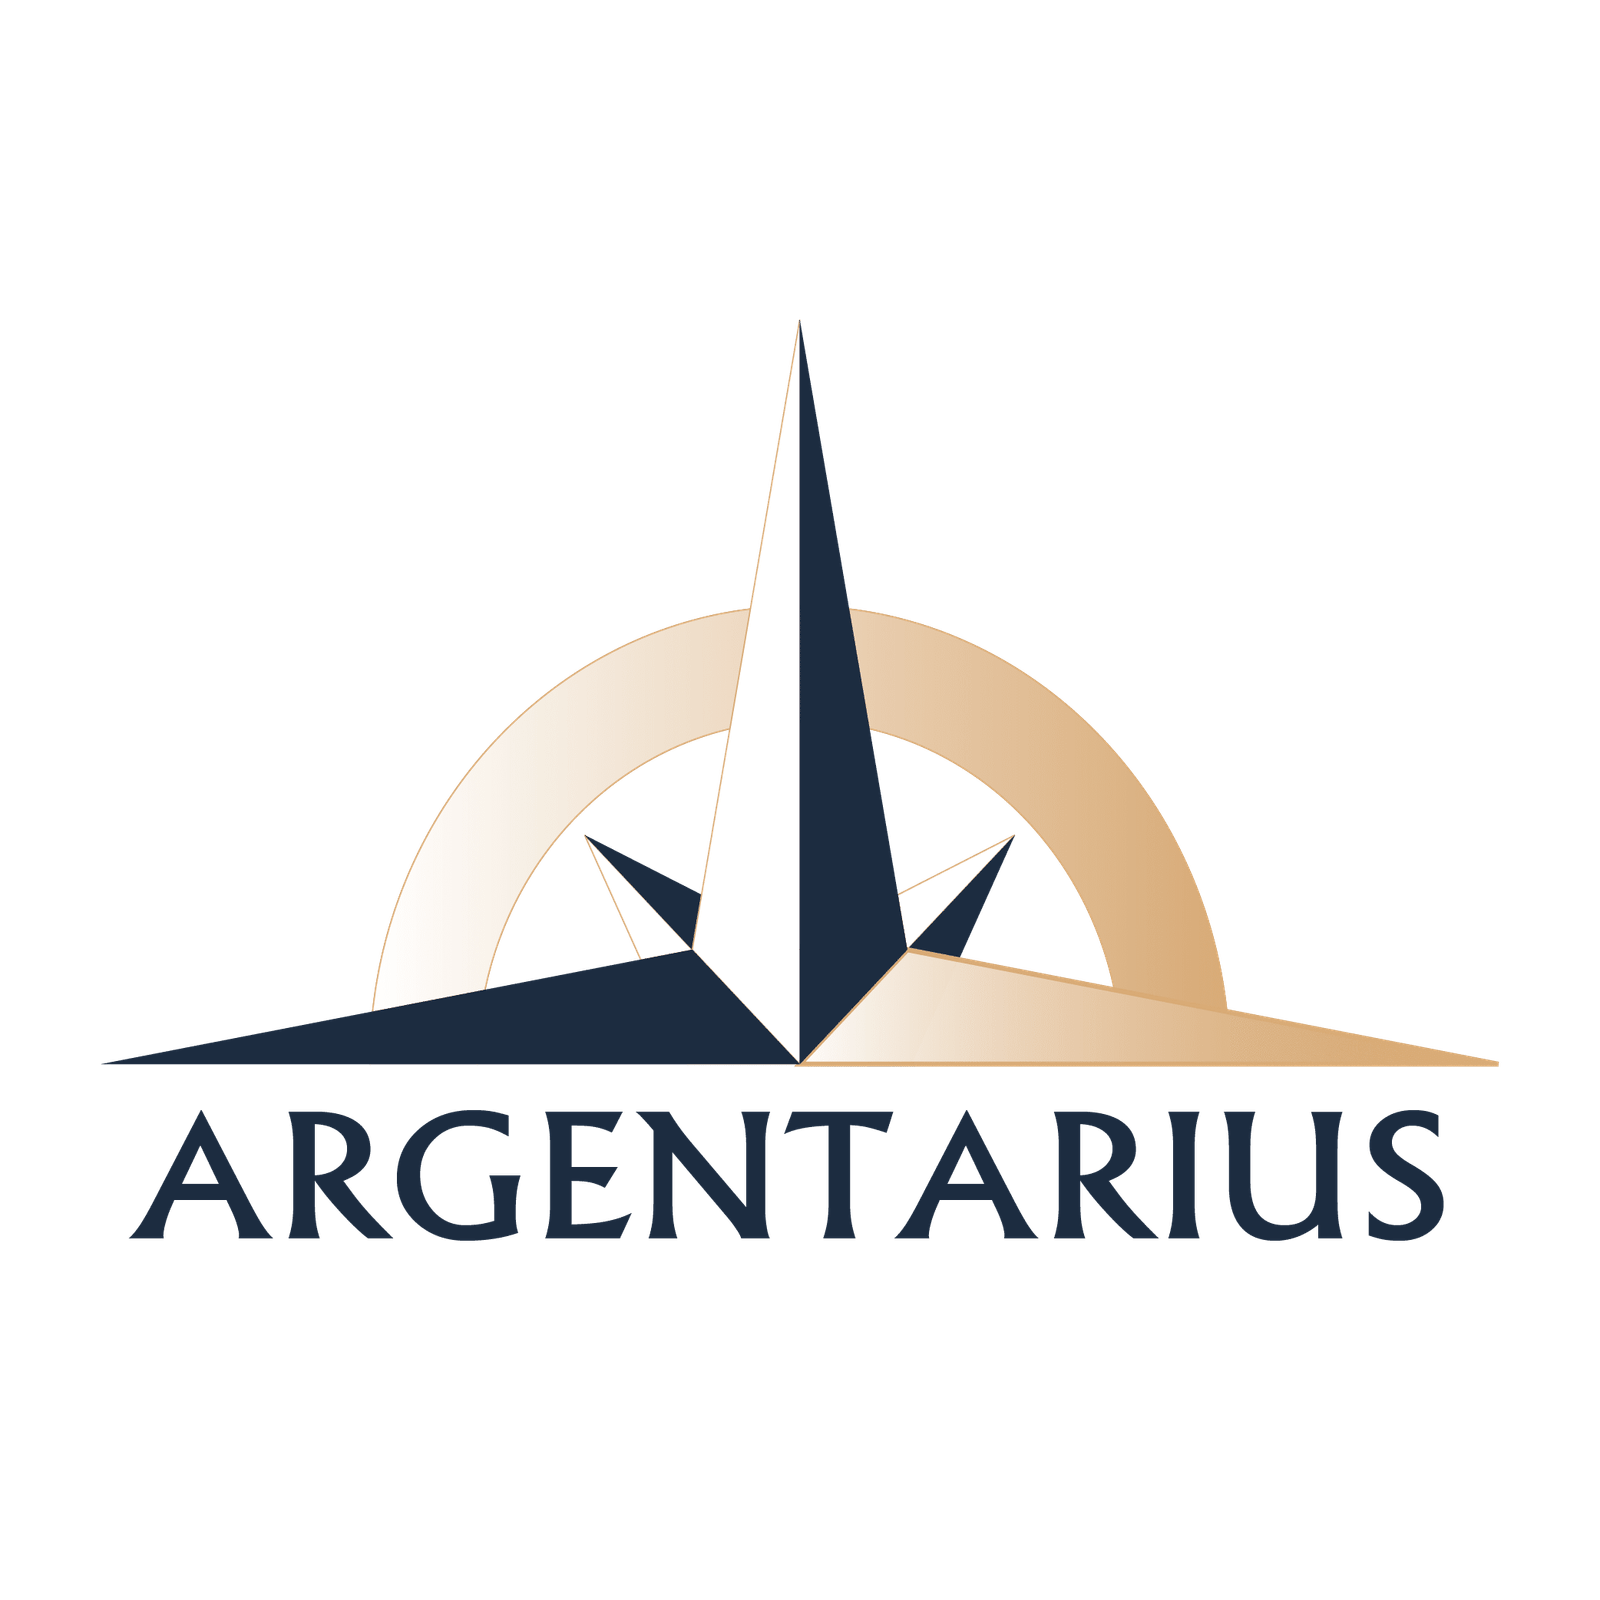 Argentarius Financial & Digital Services